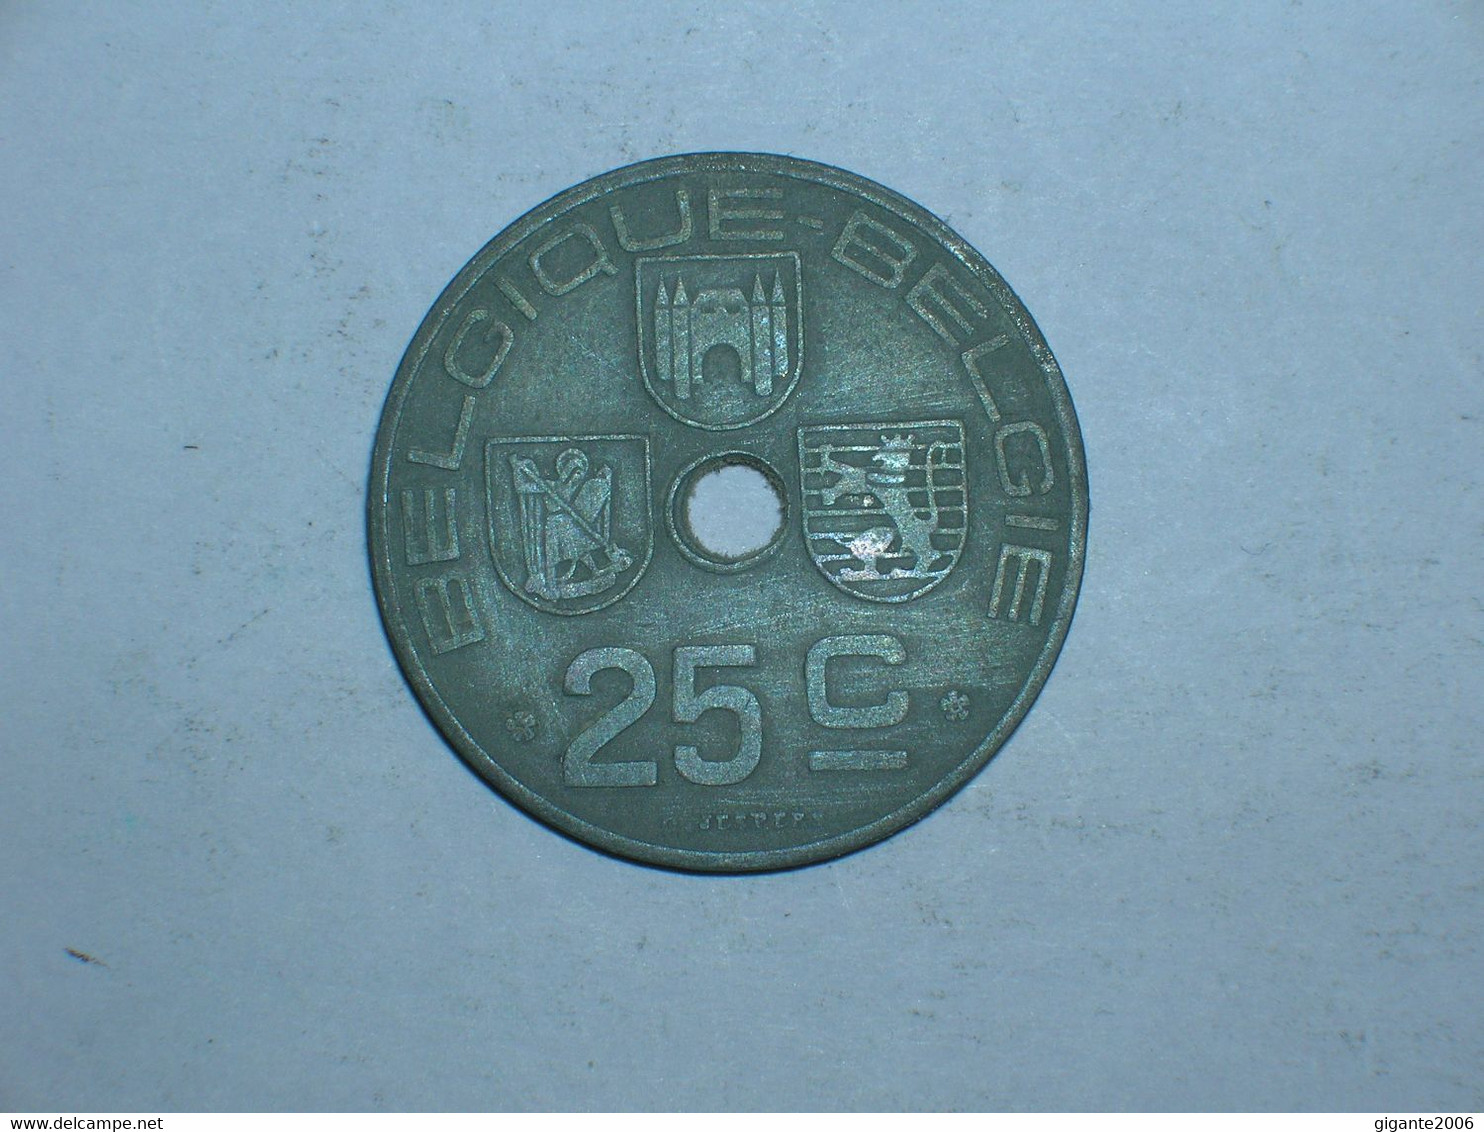 BELGICA 25 CENTIMOS 1946 FR (8981) - 25 Centesimi